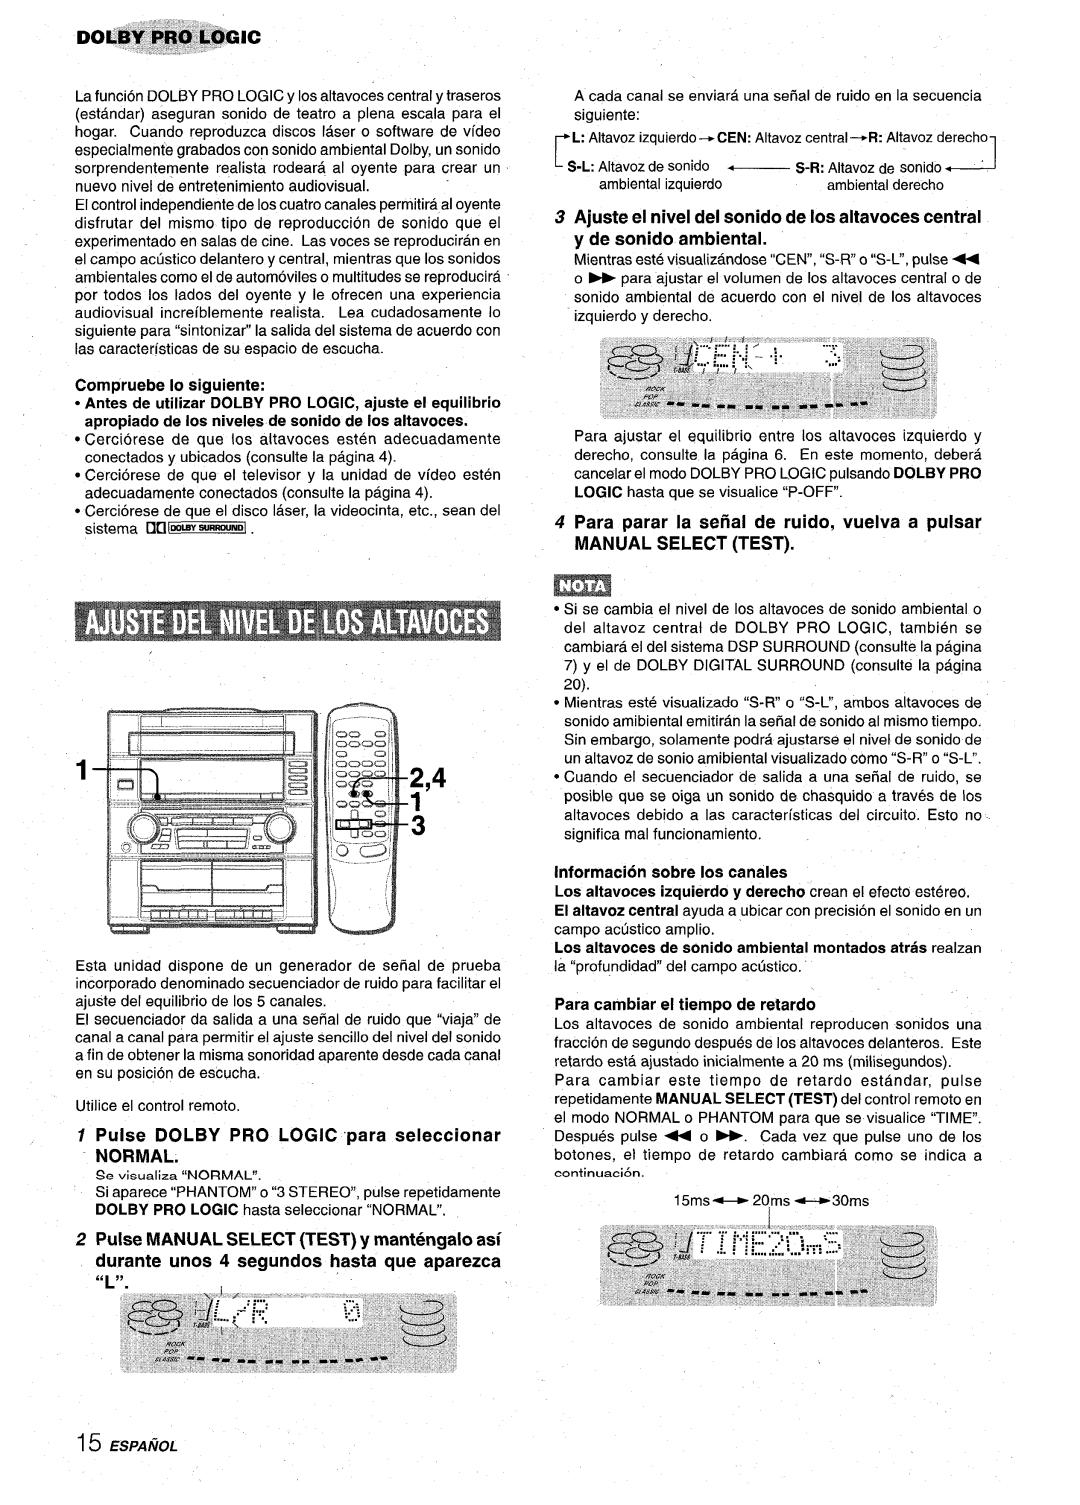 Aiwa Z-VR55 manual Pulse DOLBY PRO LOGIC para seleccionar NORMAL, Compruebe 10 siguiente, Information sobre Ios canales 